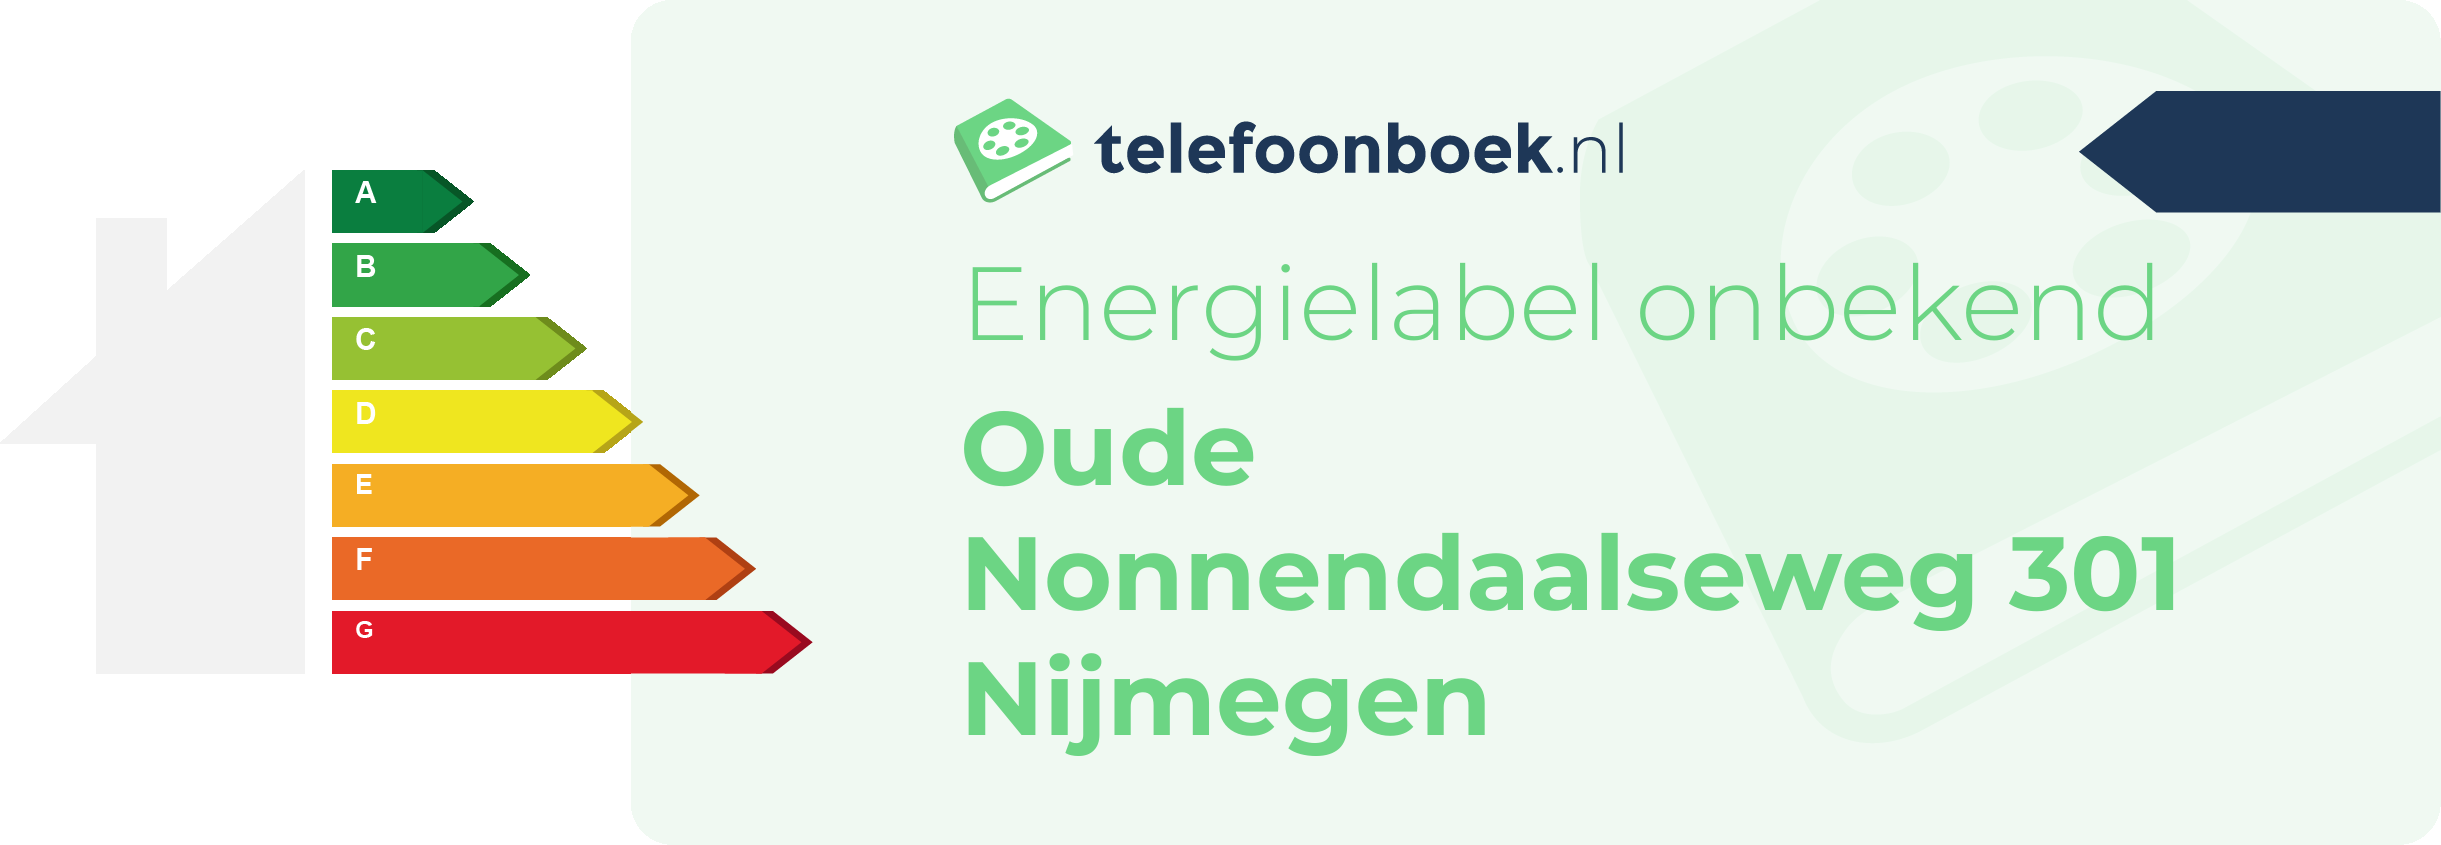 Energielabel Oude Nonnendaalseweg 301 Nijmegen